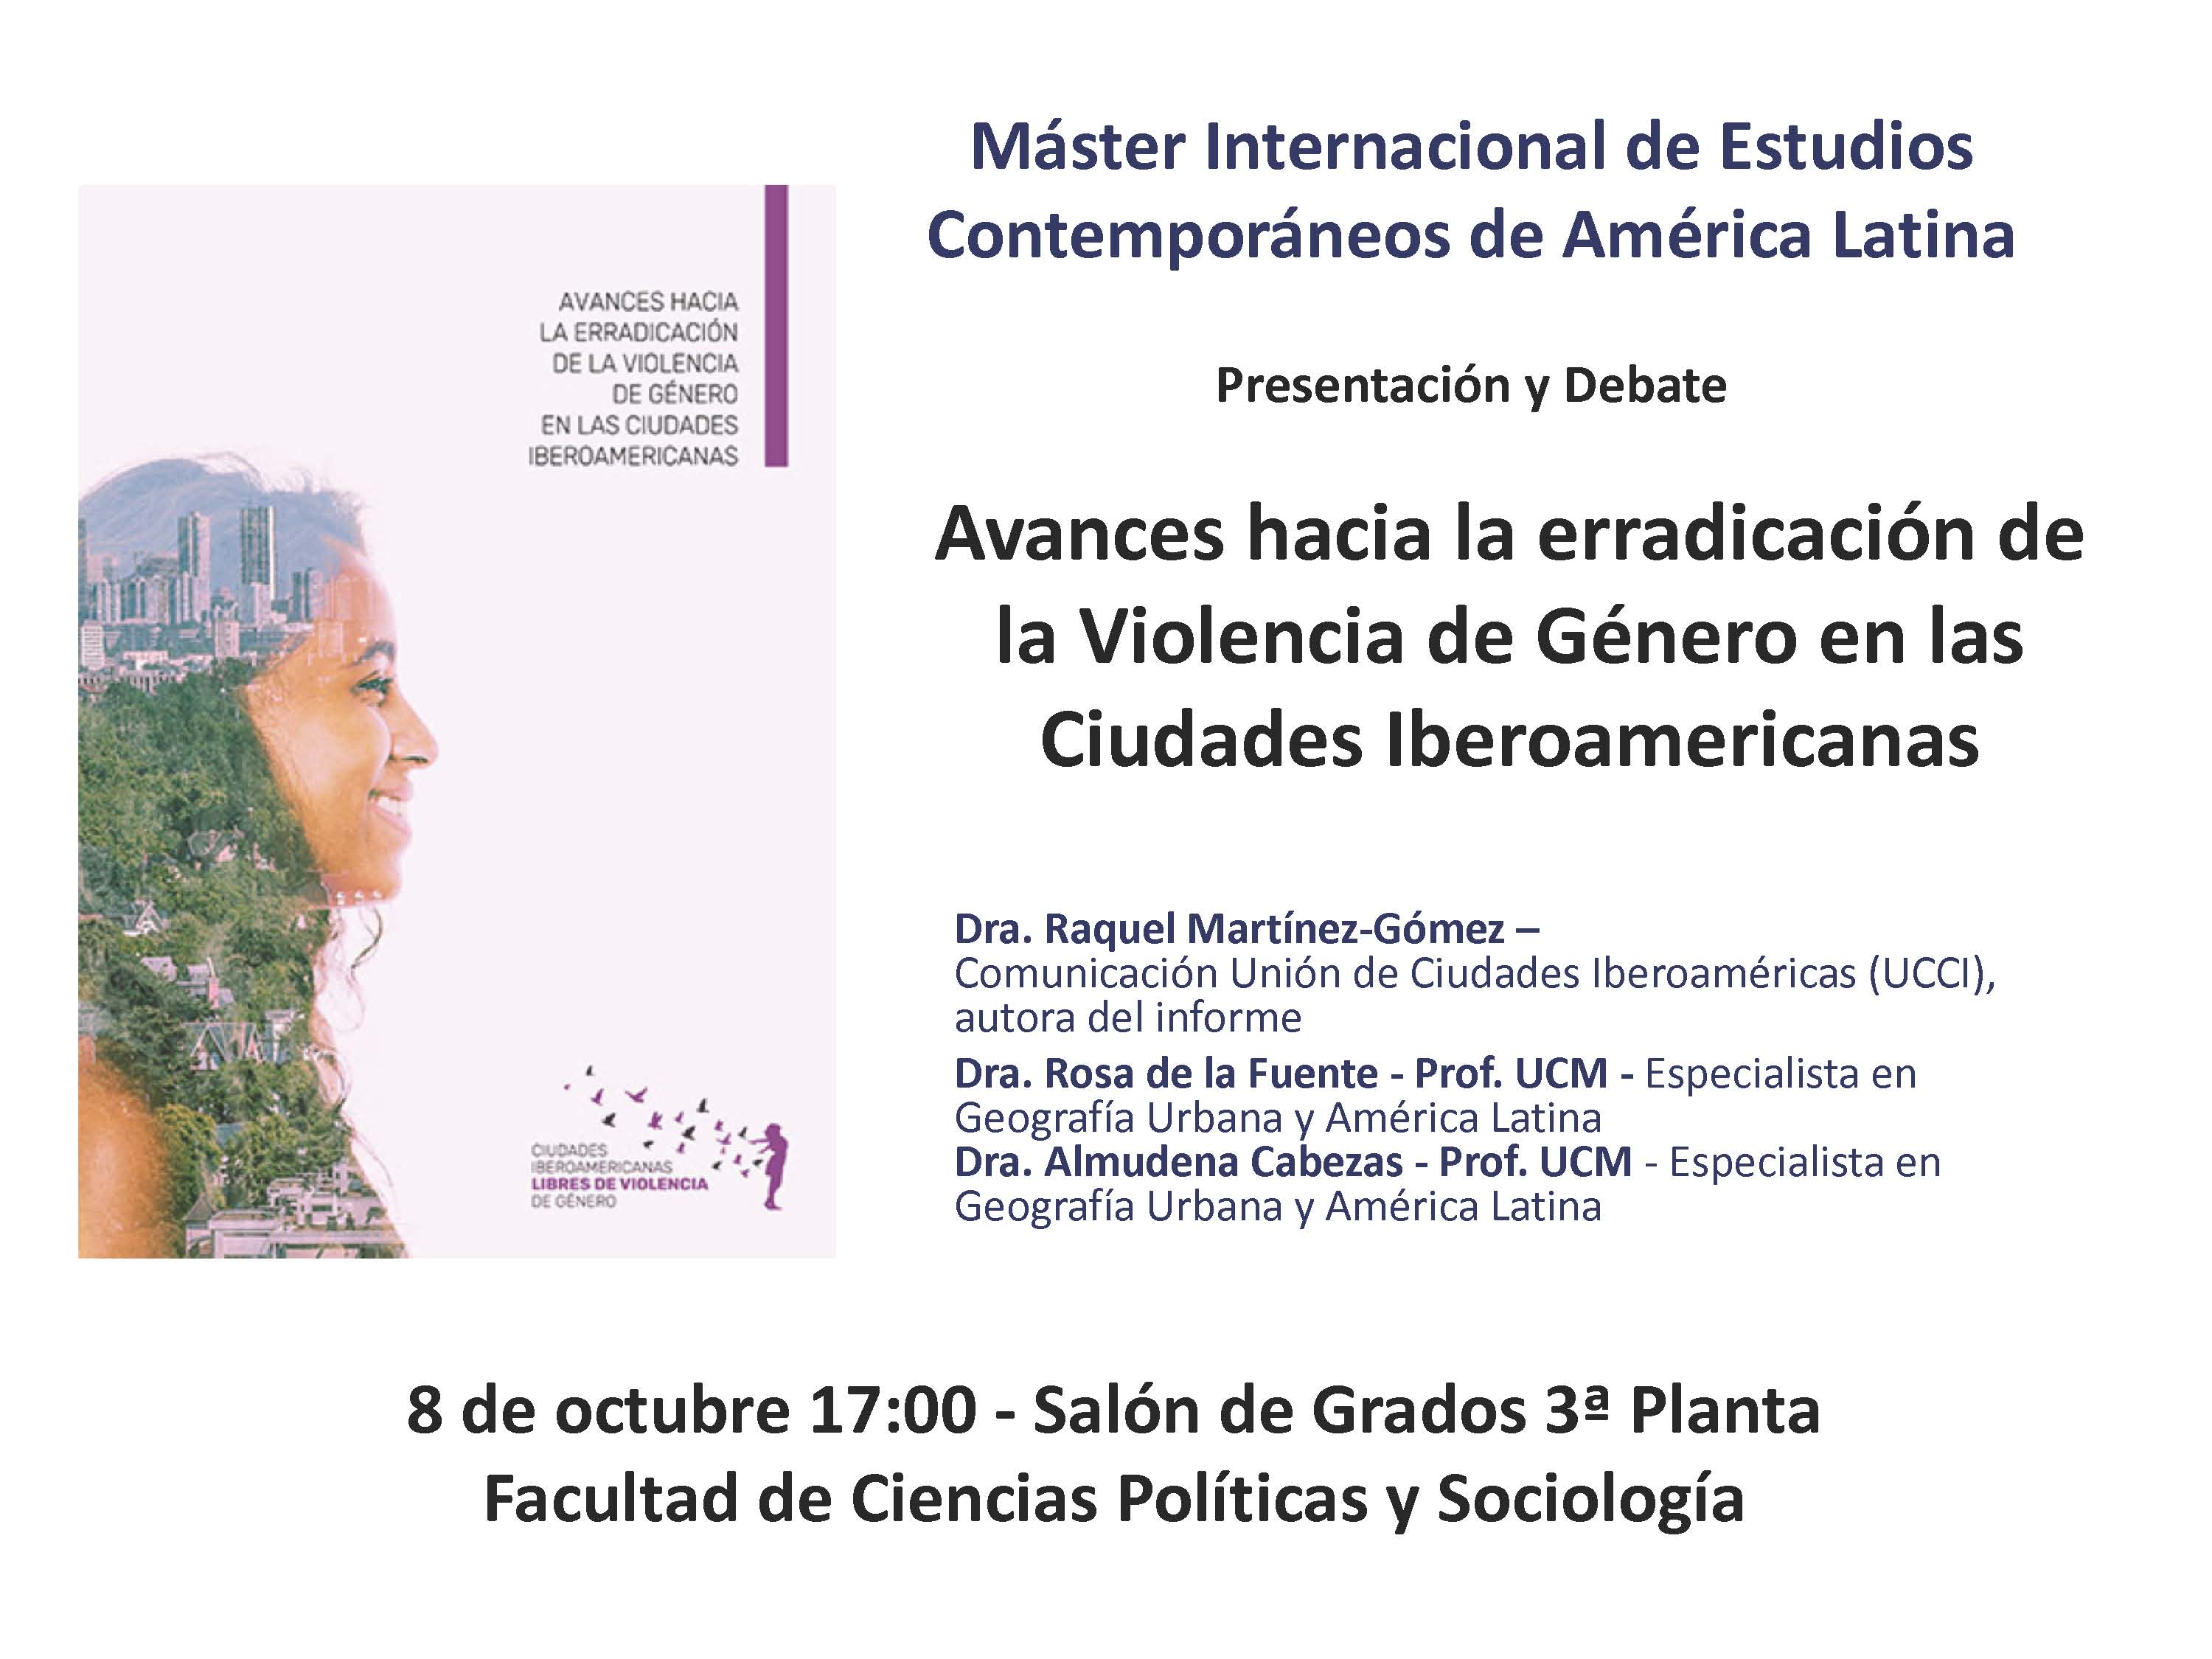 Presentación pública del Informe y debate "Avances hacia la erradicación de la violencia de género en las ciudades Iberoamericanas" Lunes 8 octubre - 1